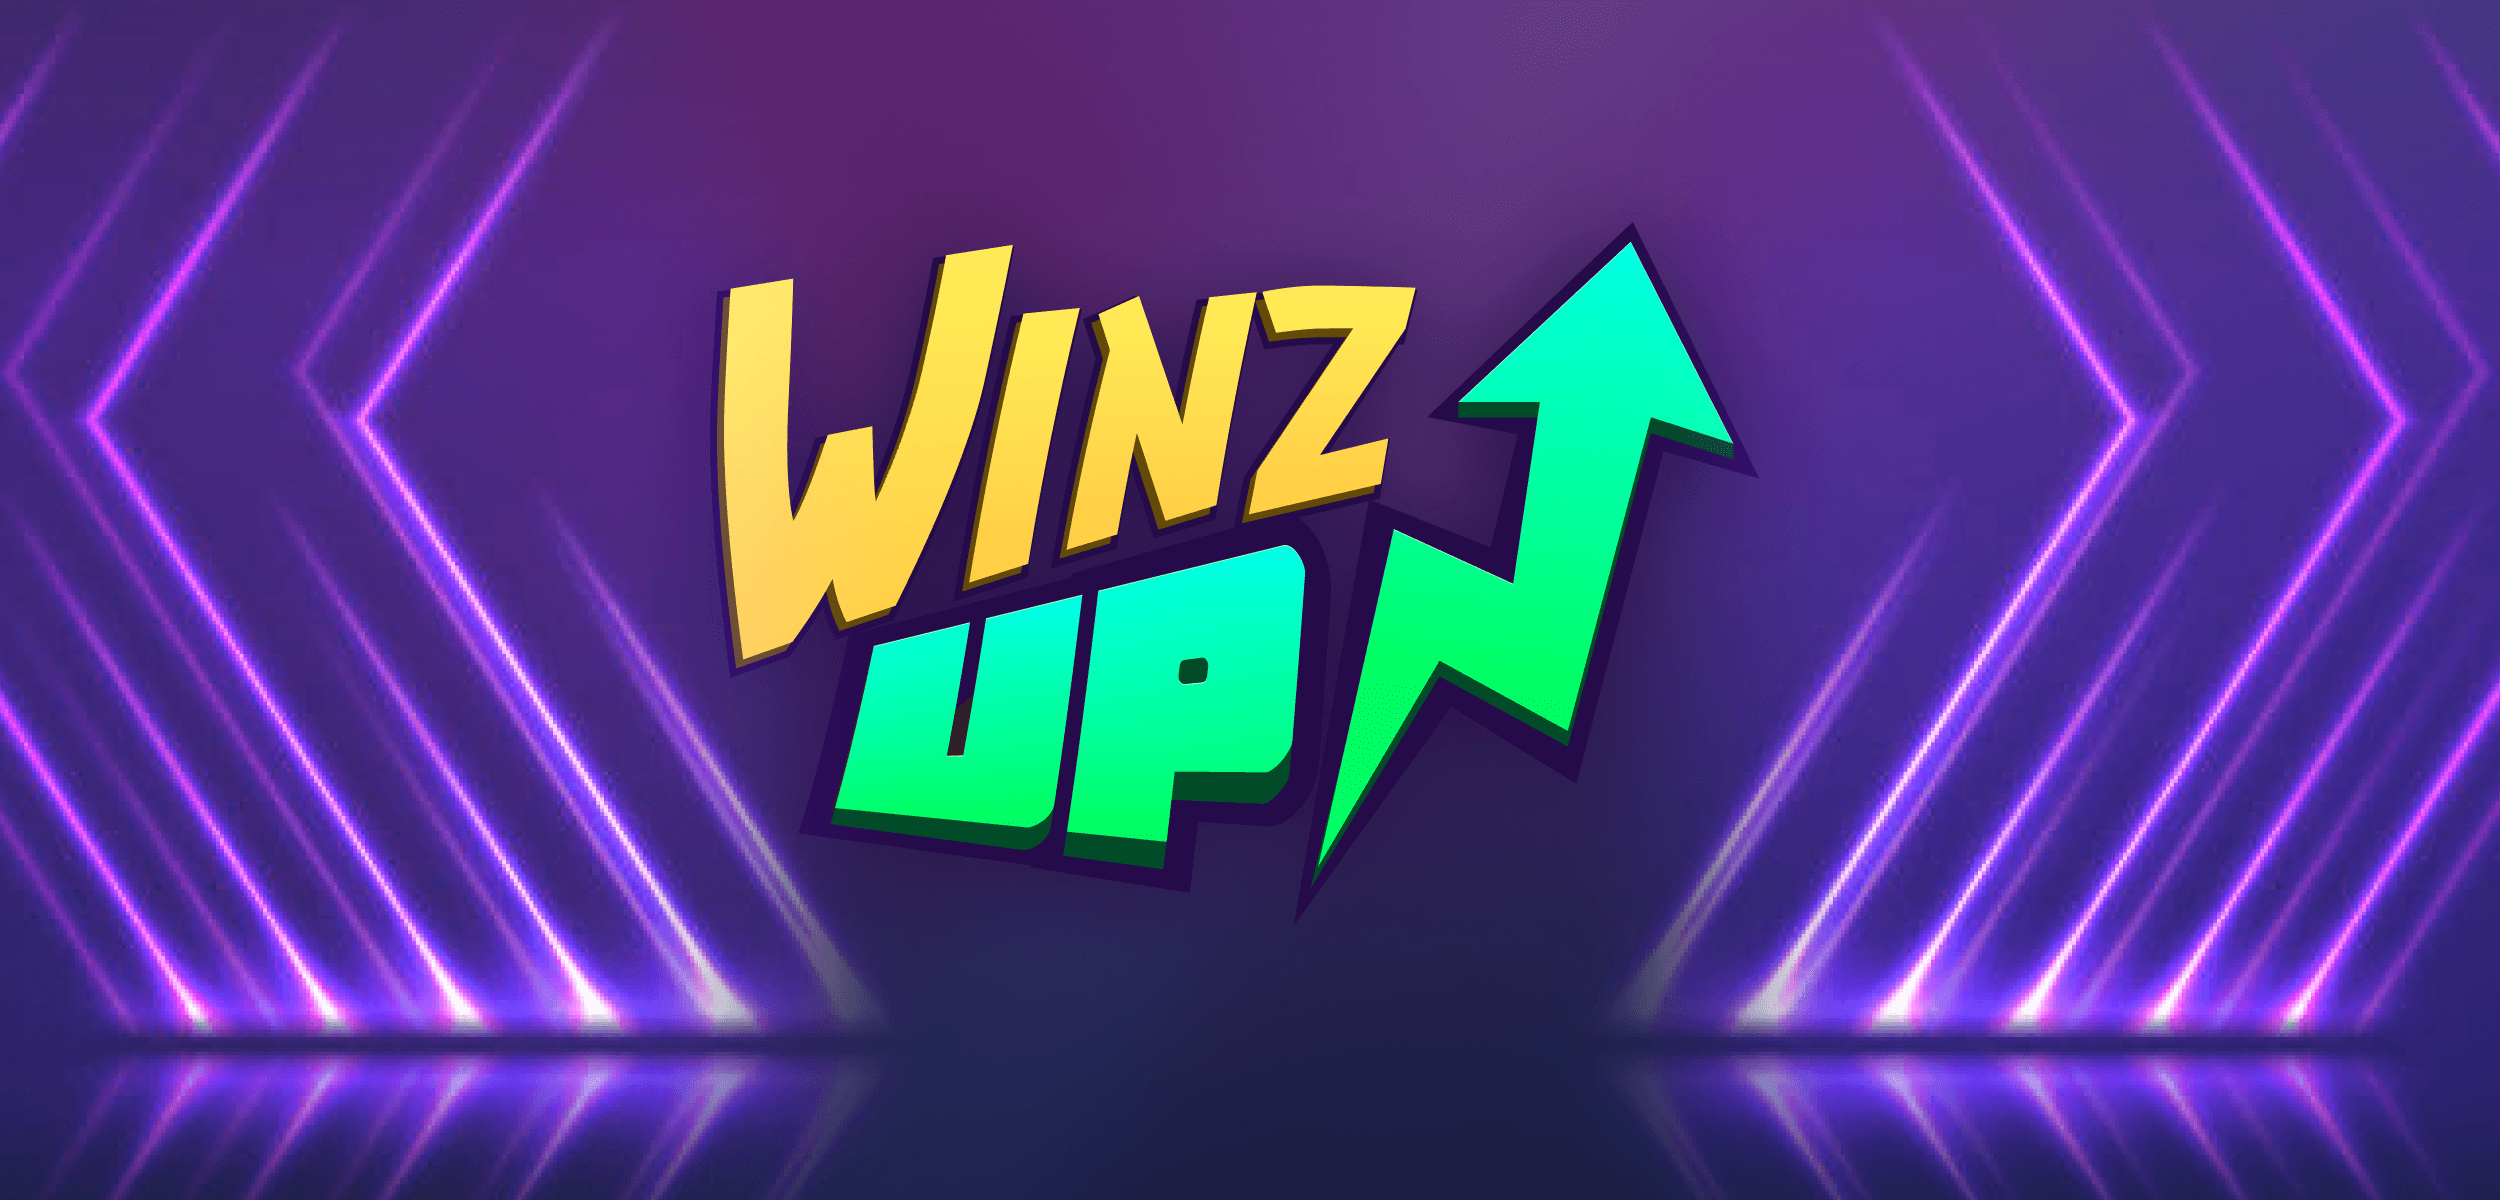 Get Rewarded: Winz.io Introduces WinzUp Loyalty Program